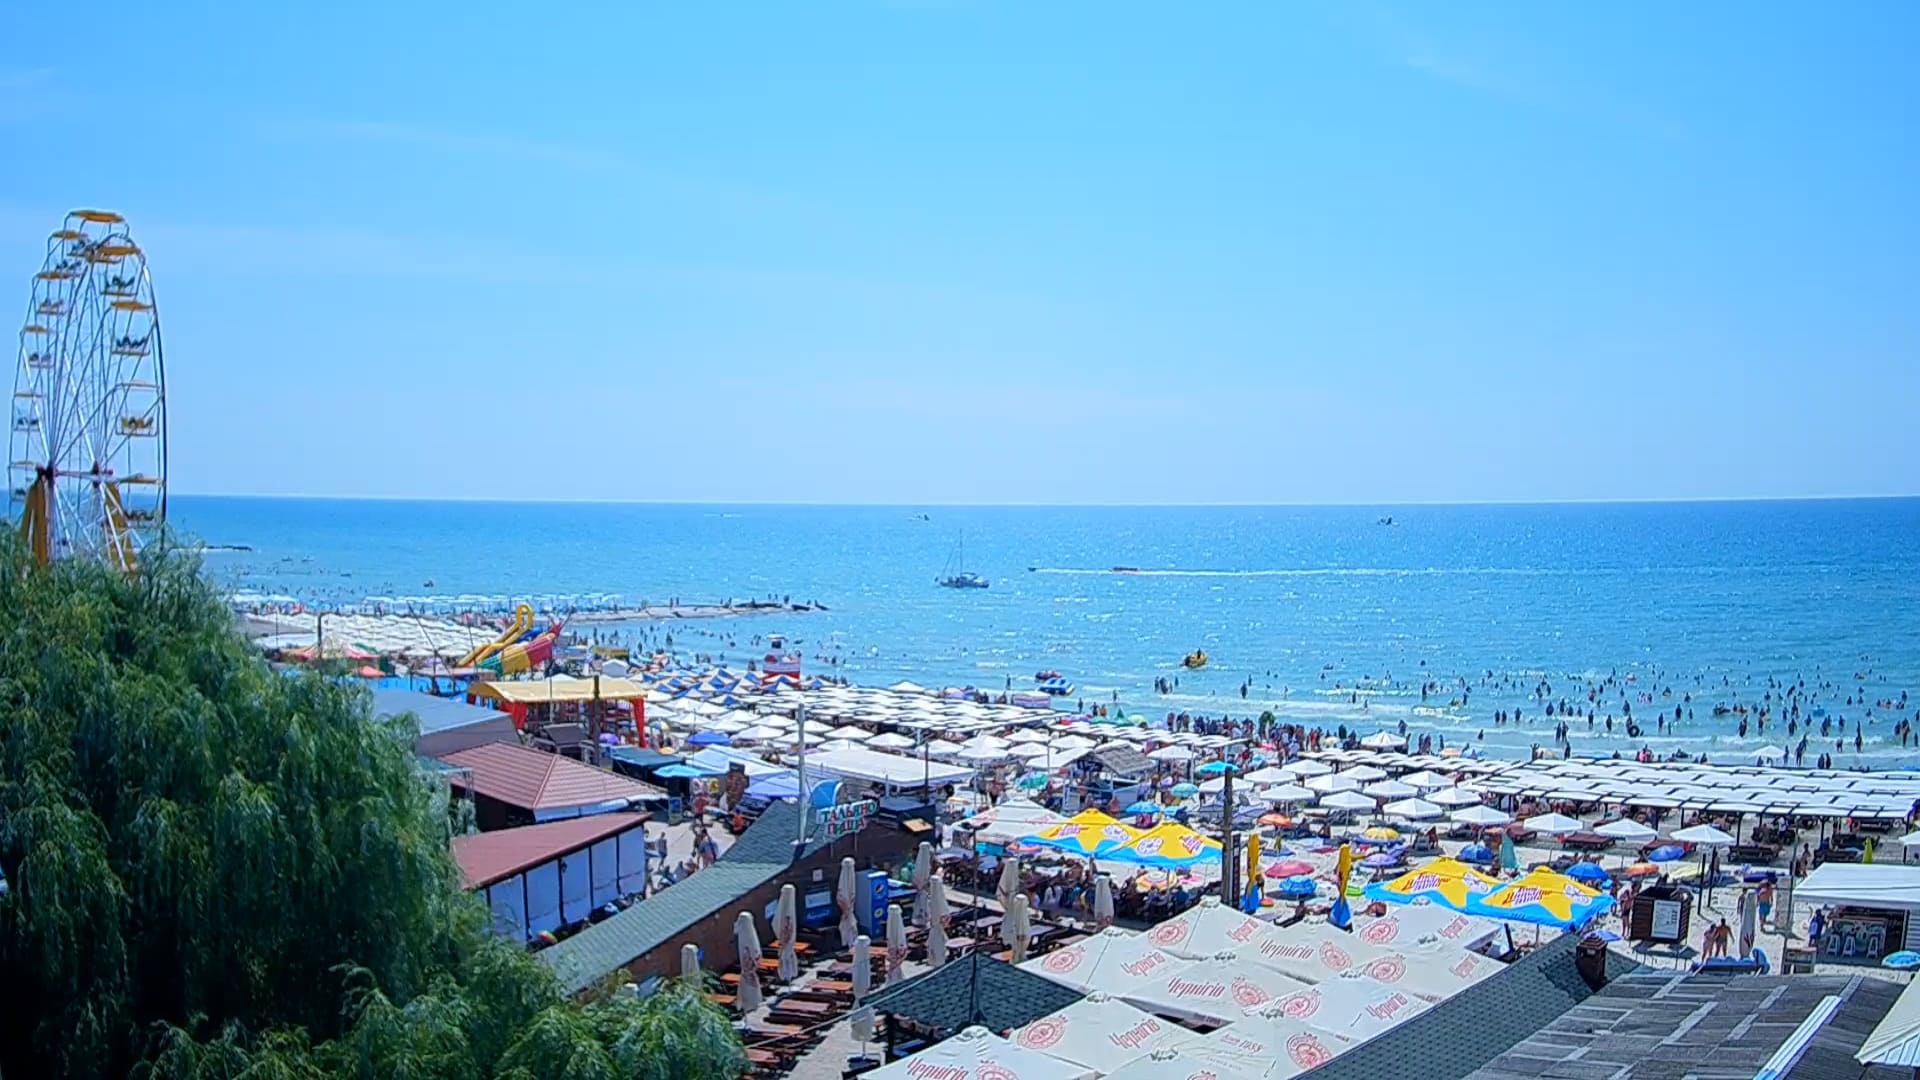 Веб-камера с панорамным видом на Черное море